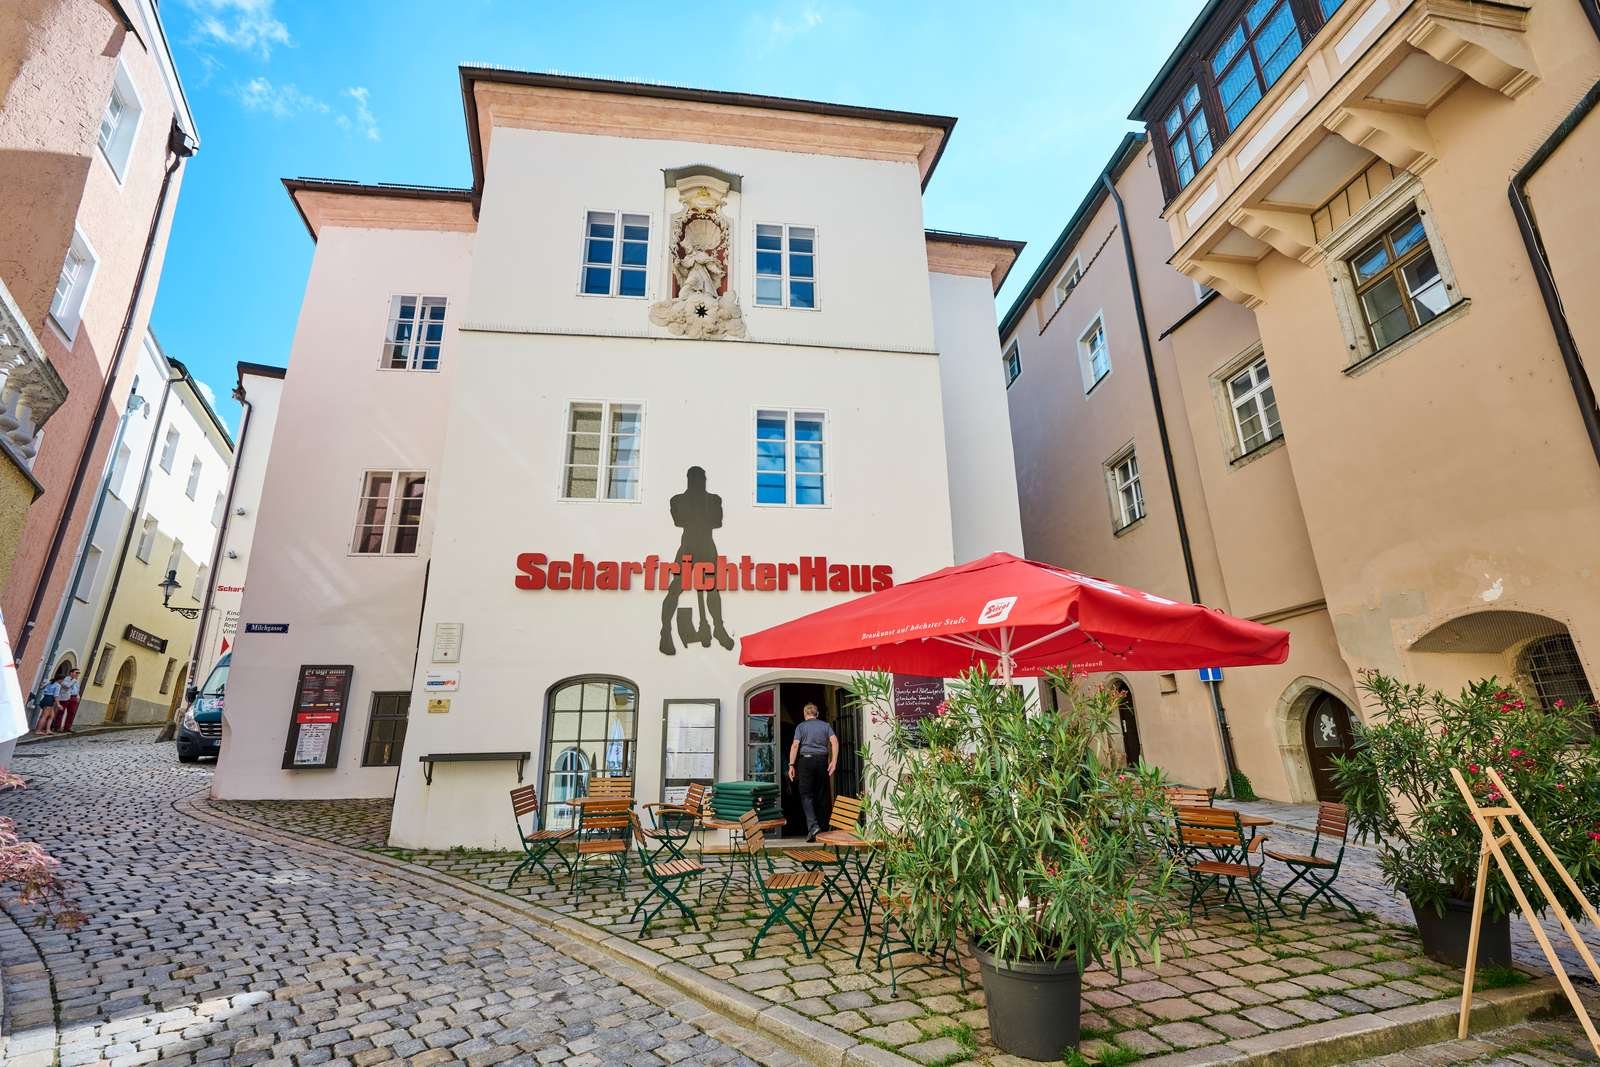 Scharfrichterhaus in Passau